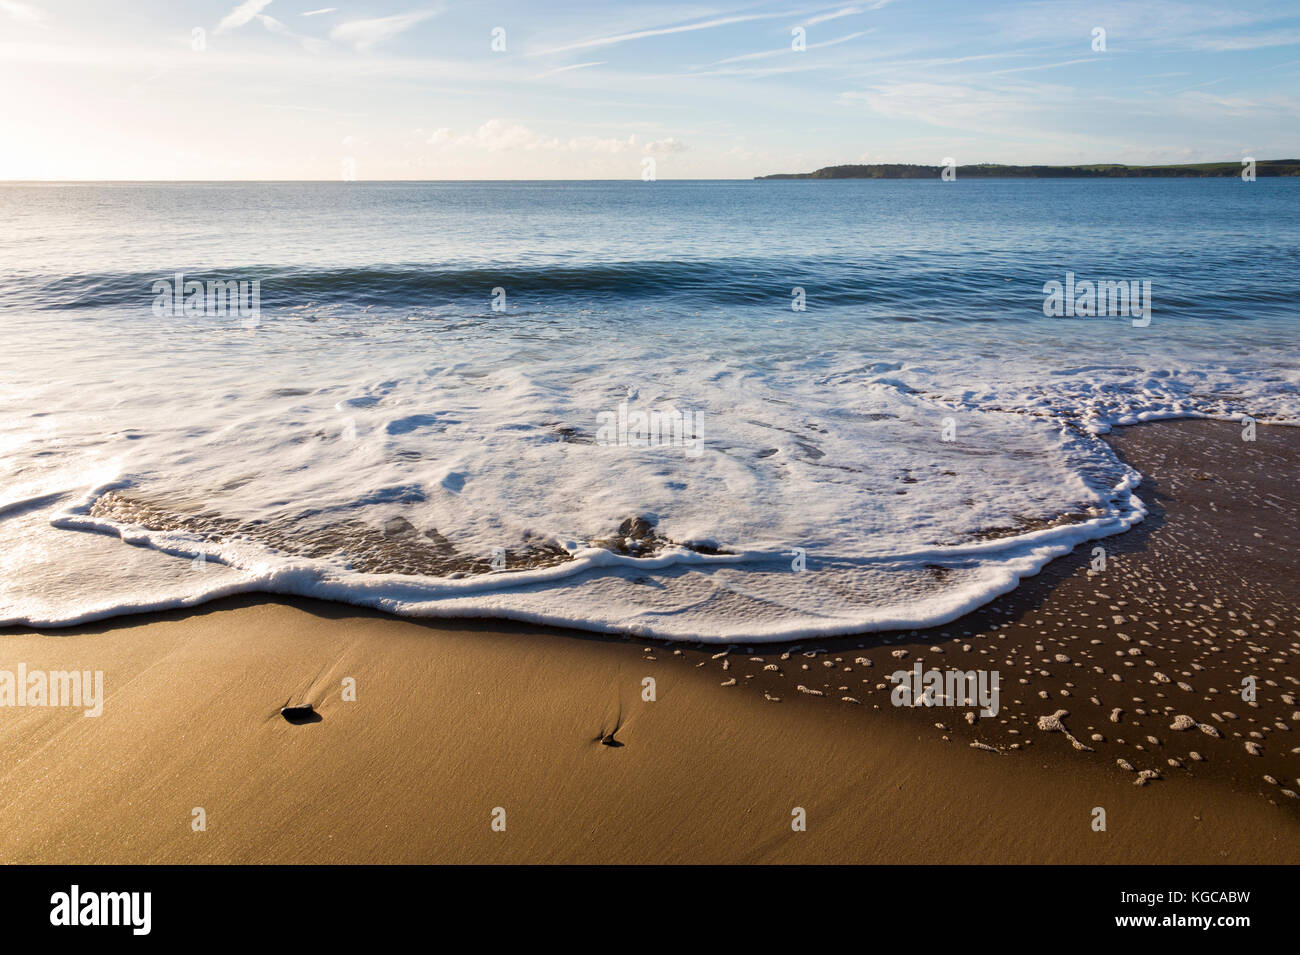 Gentili onde che si infrangono sulla tenby South beach in Galles del Sud, Regno Unito Foto Stock